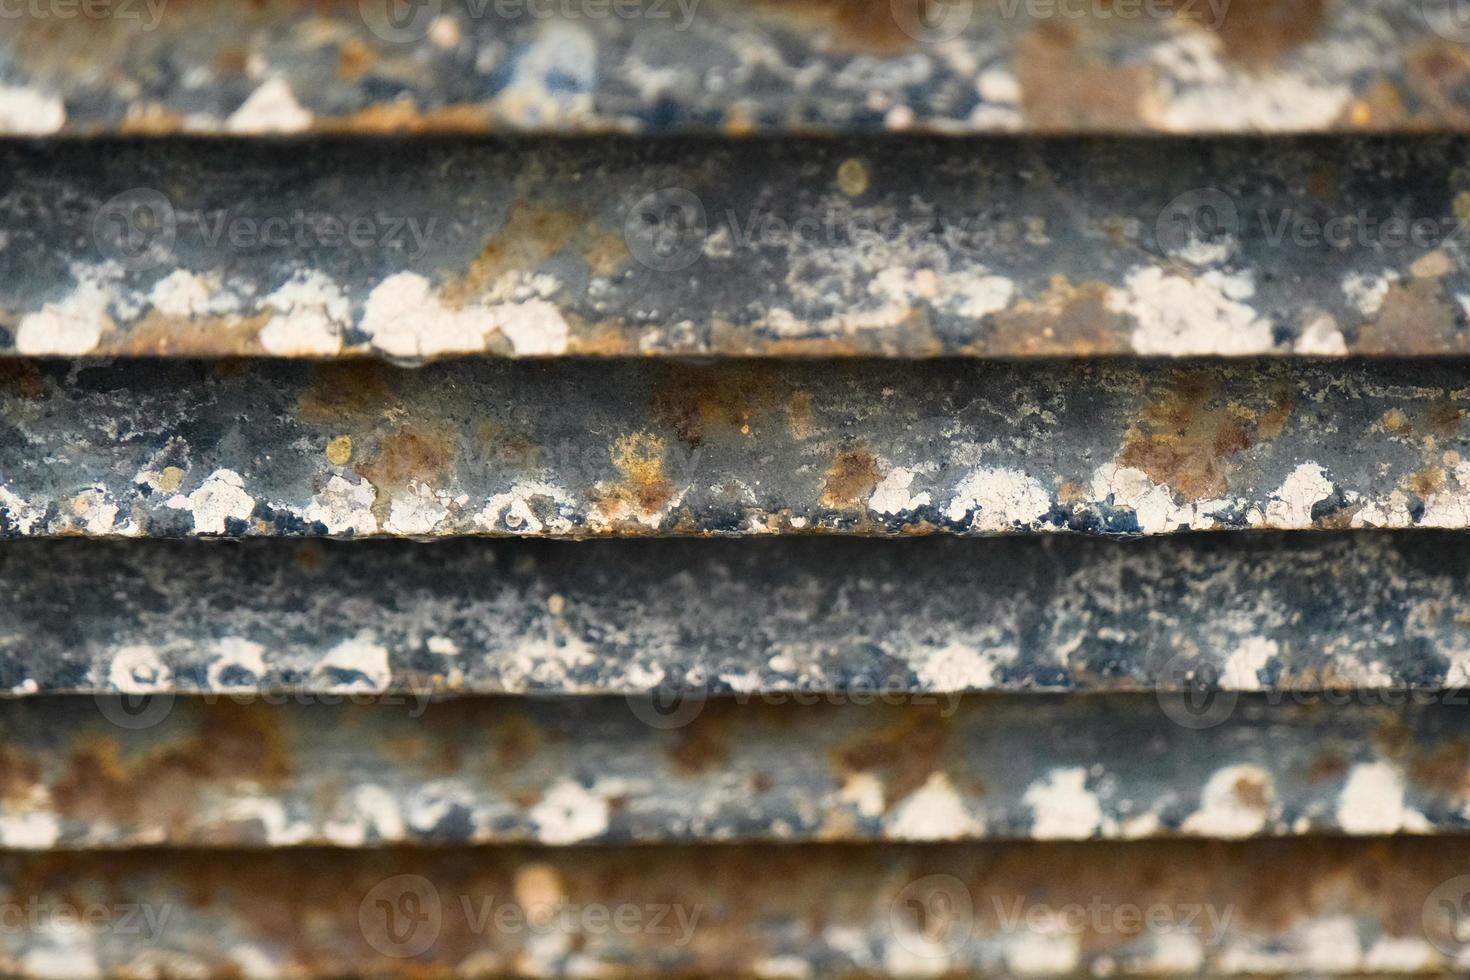 Close-up de pared de celosía de metal oxidado foto